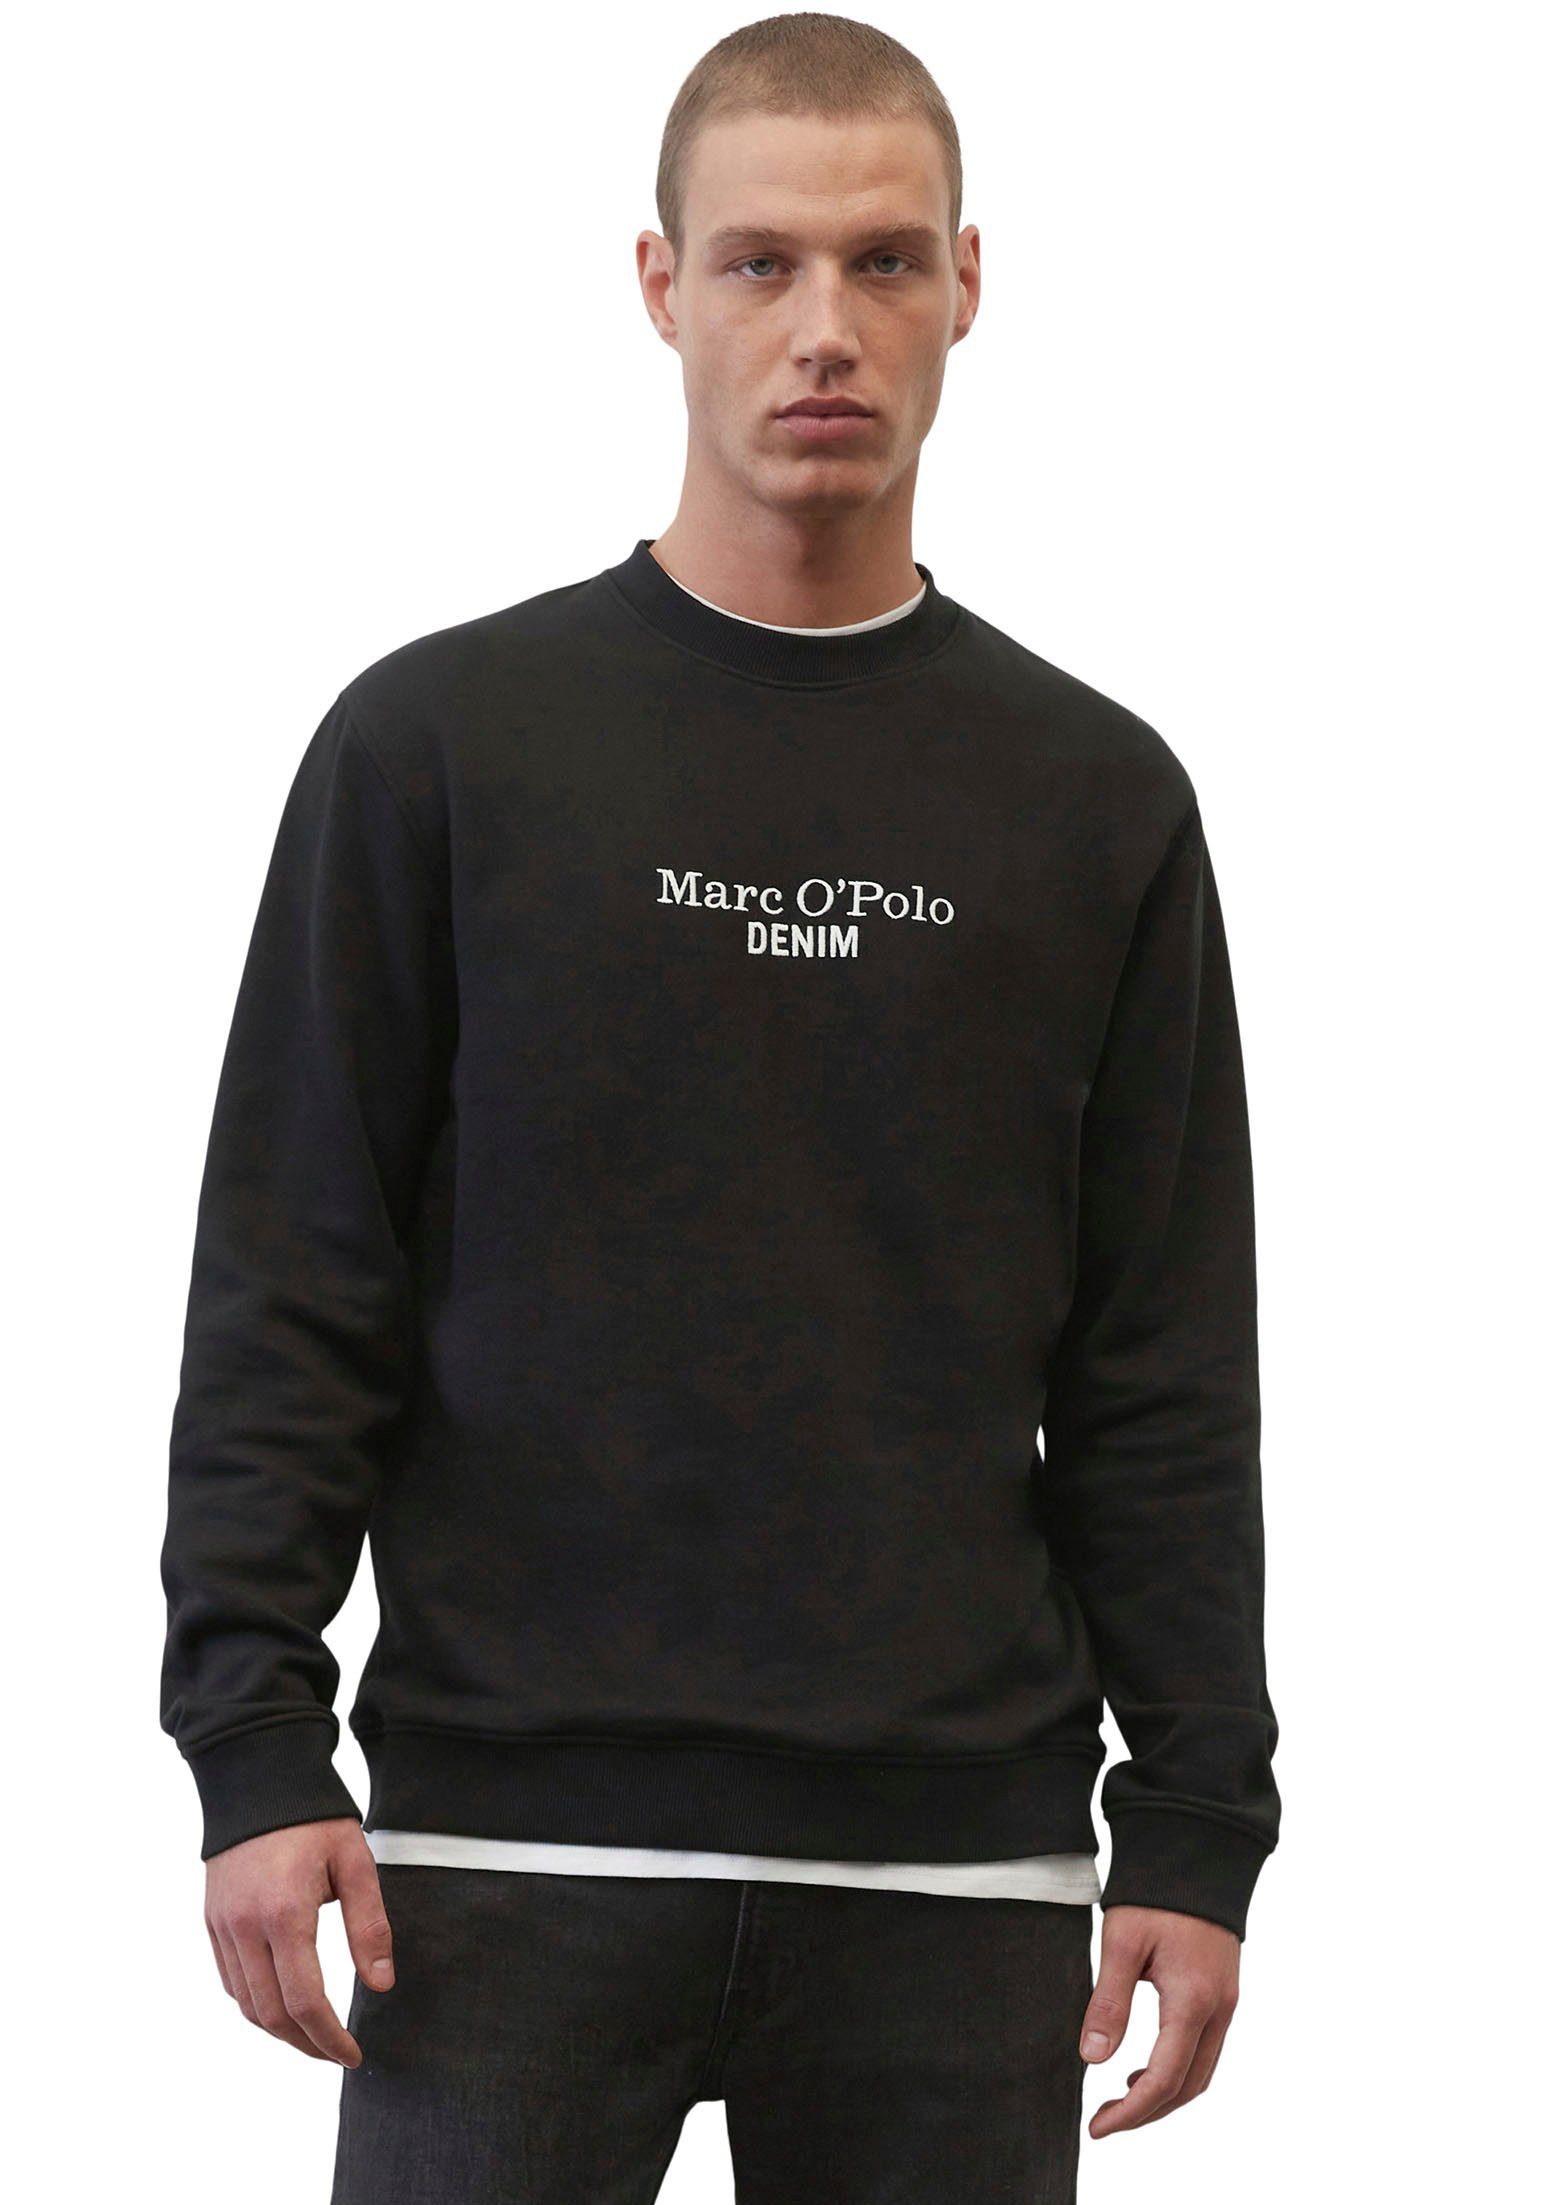 Marc O'Polo DENIM Sweatshirt mit großer Label-Stickerei vorne schwarz